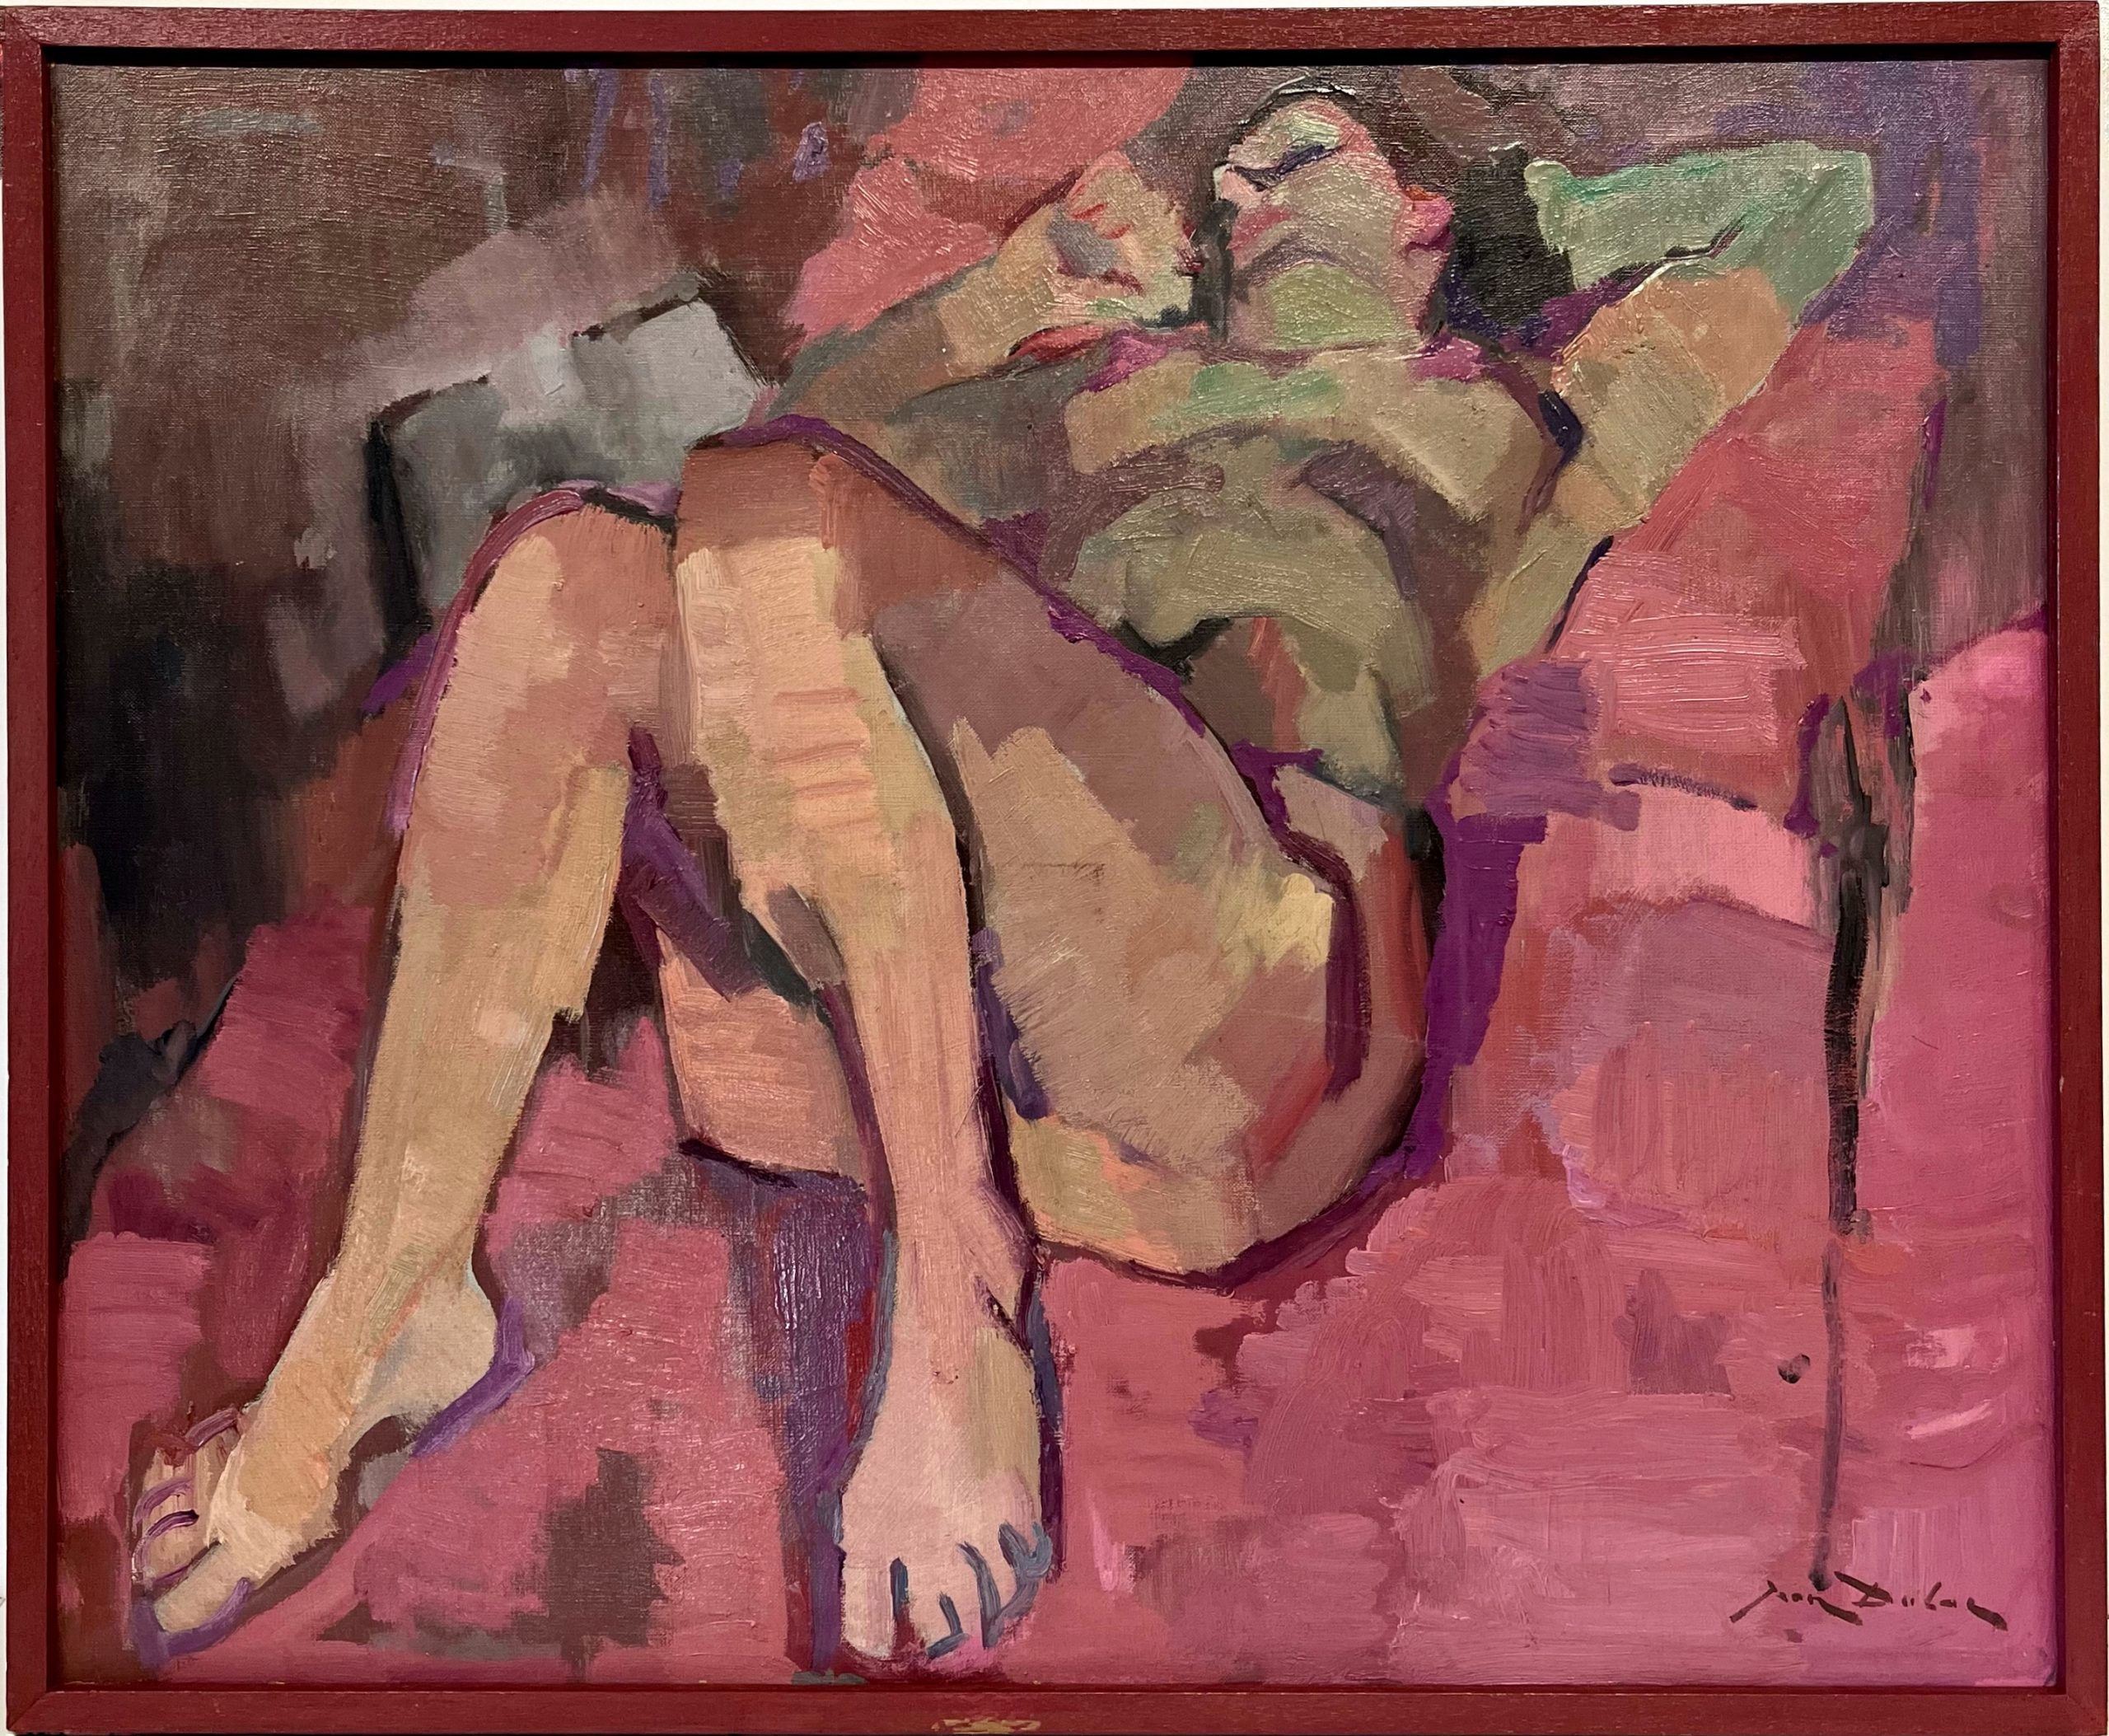 J.DULAC, Jeune femme nue allongée, XXe, huile sur toile, 73x60 cm encadré